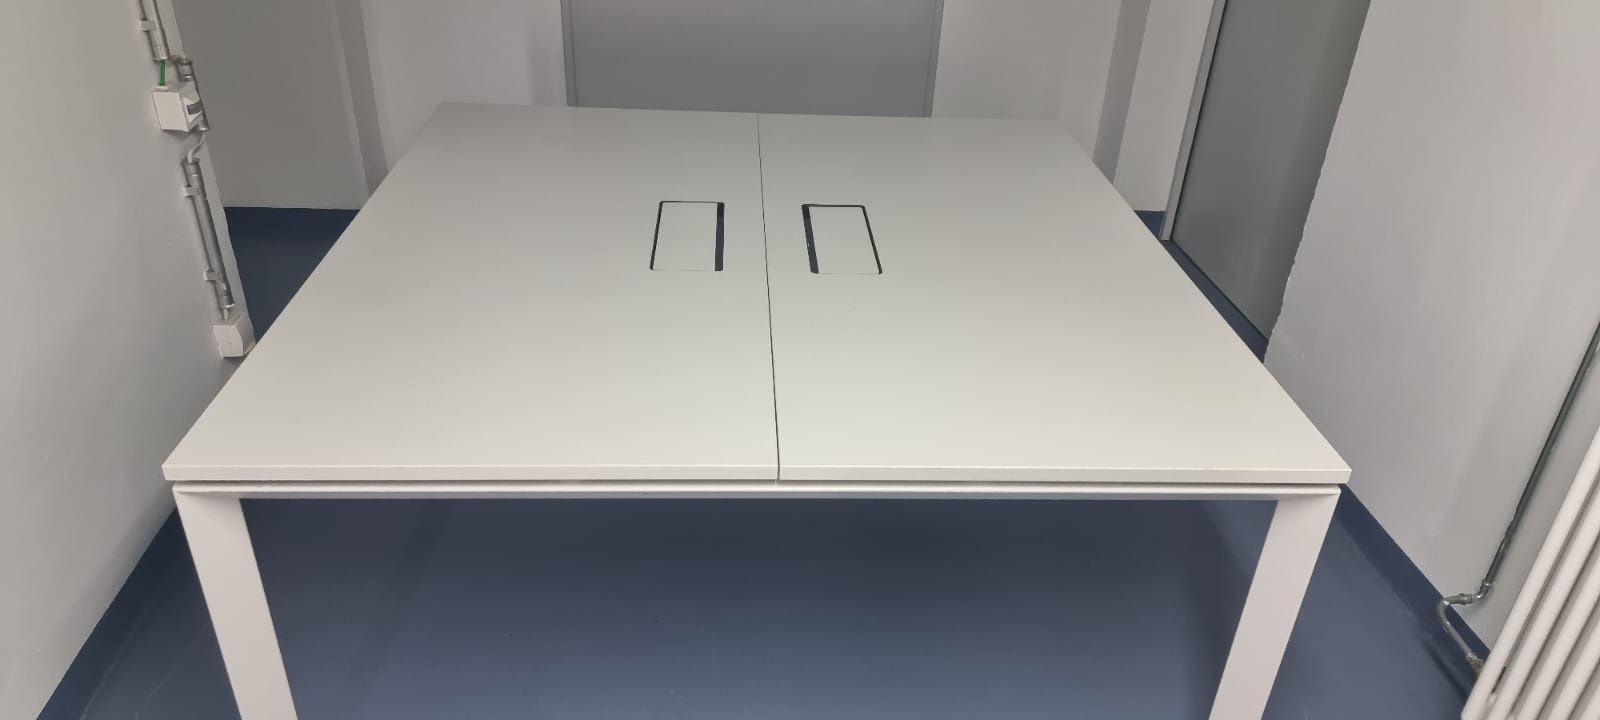 Masa birou lucru Steelcase 1.6x1.6m